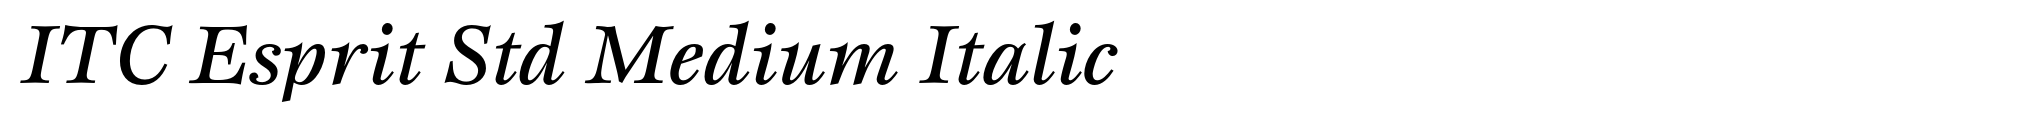 ITC Esprit Std Medium Italic image